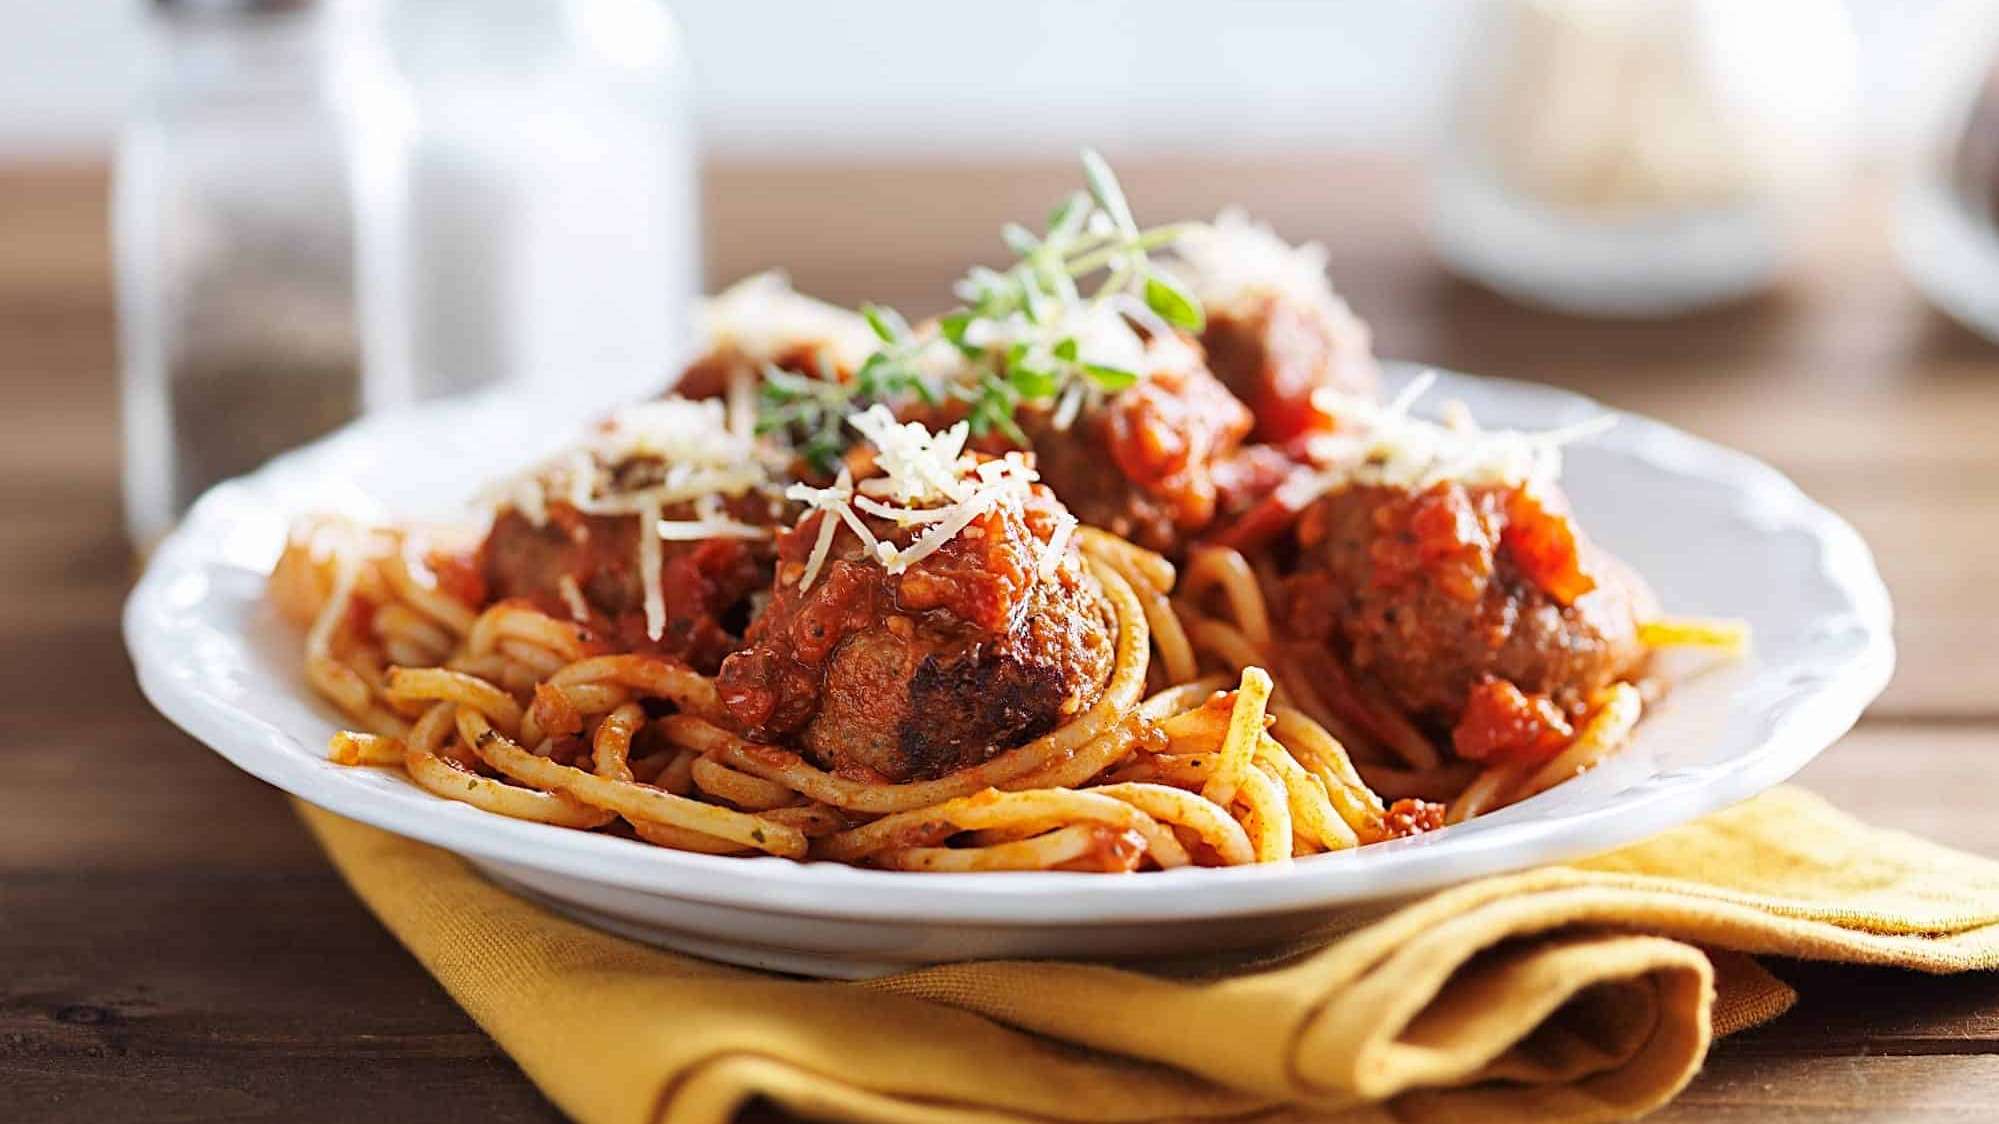 Des boulettes de viande de boeuf hachée cuites en sauce tomates sont posées sur des spaghetti, dans une assiette blanche